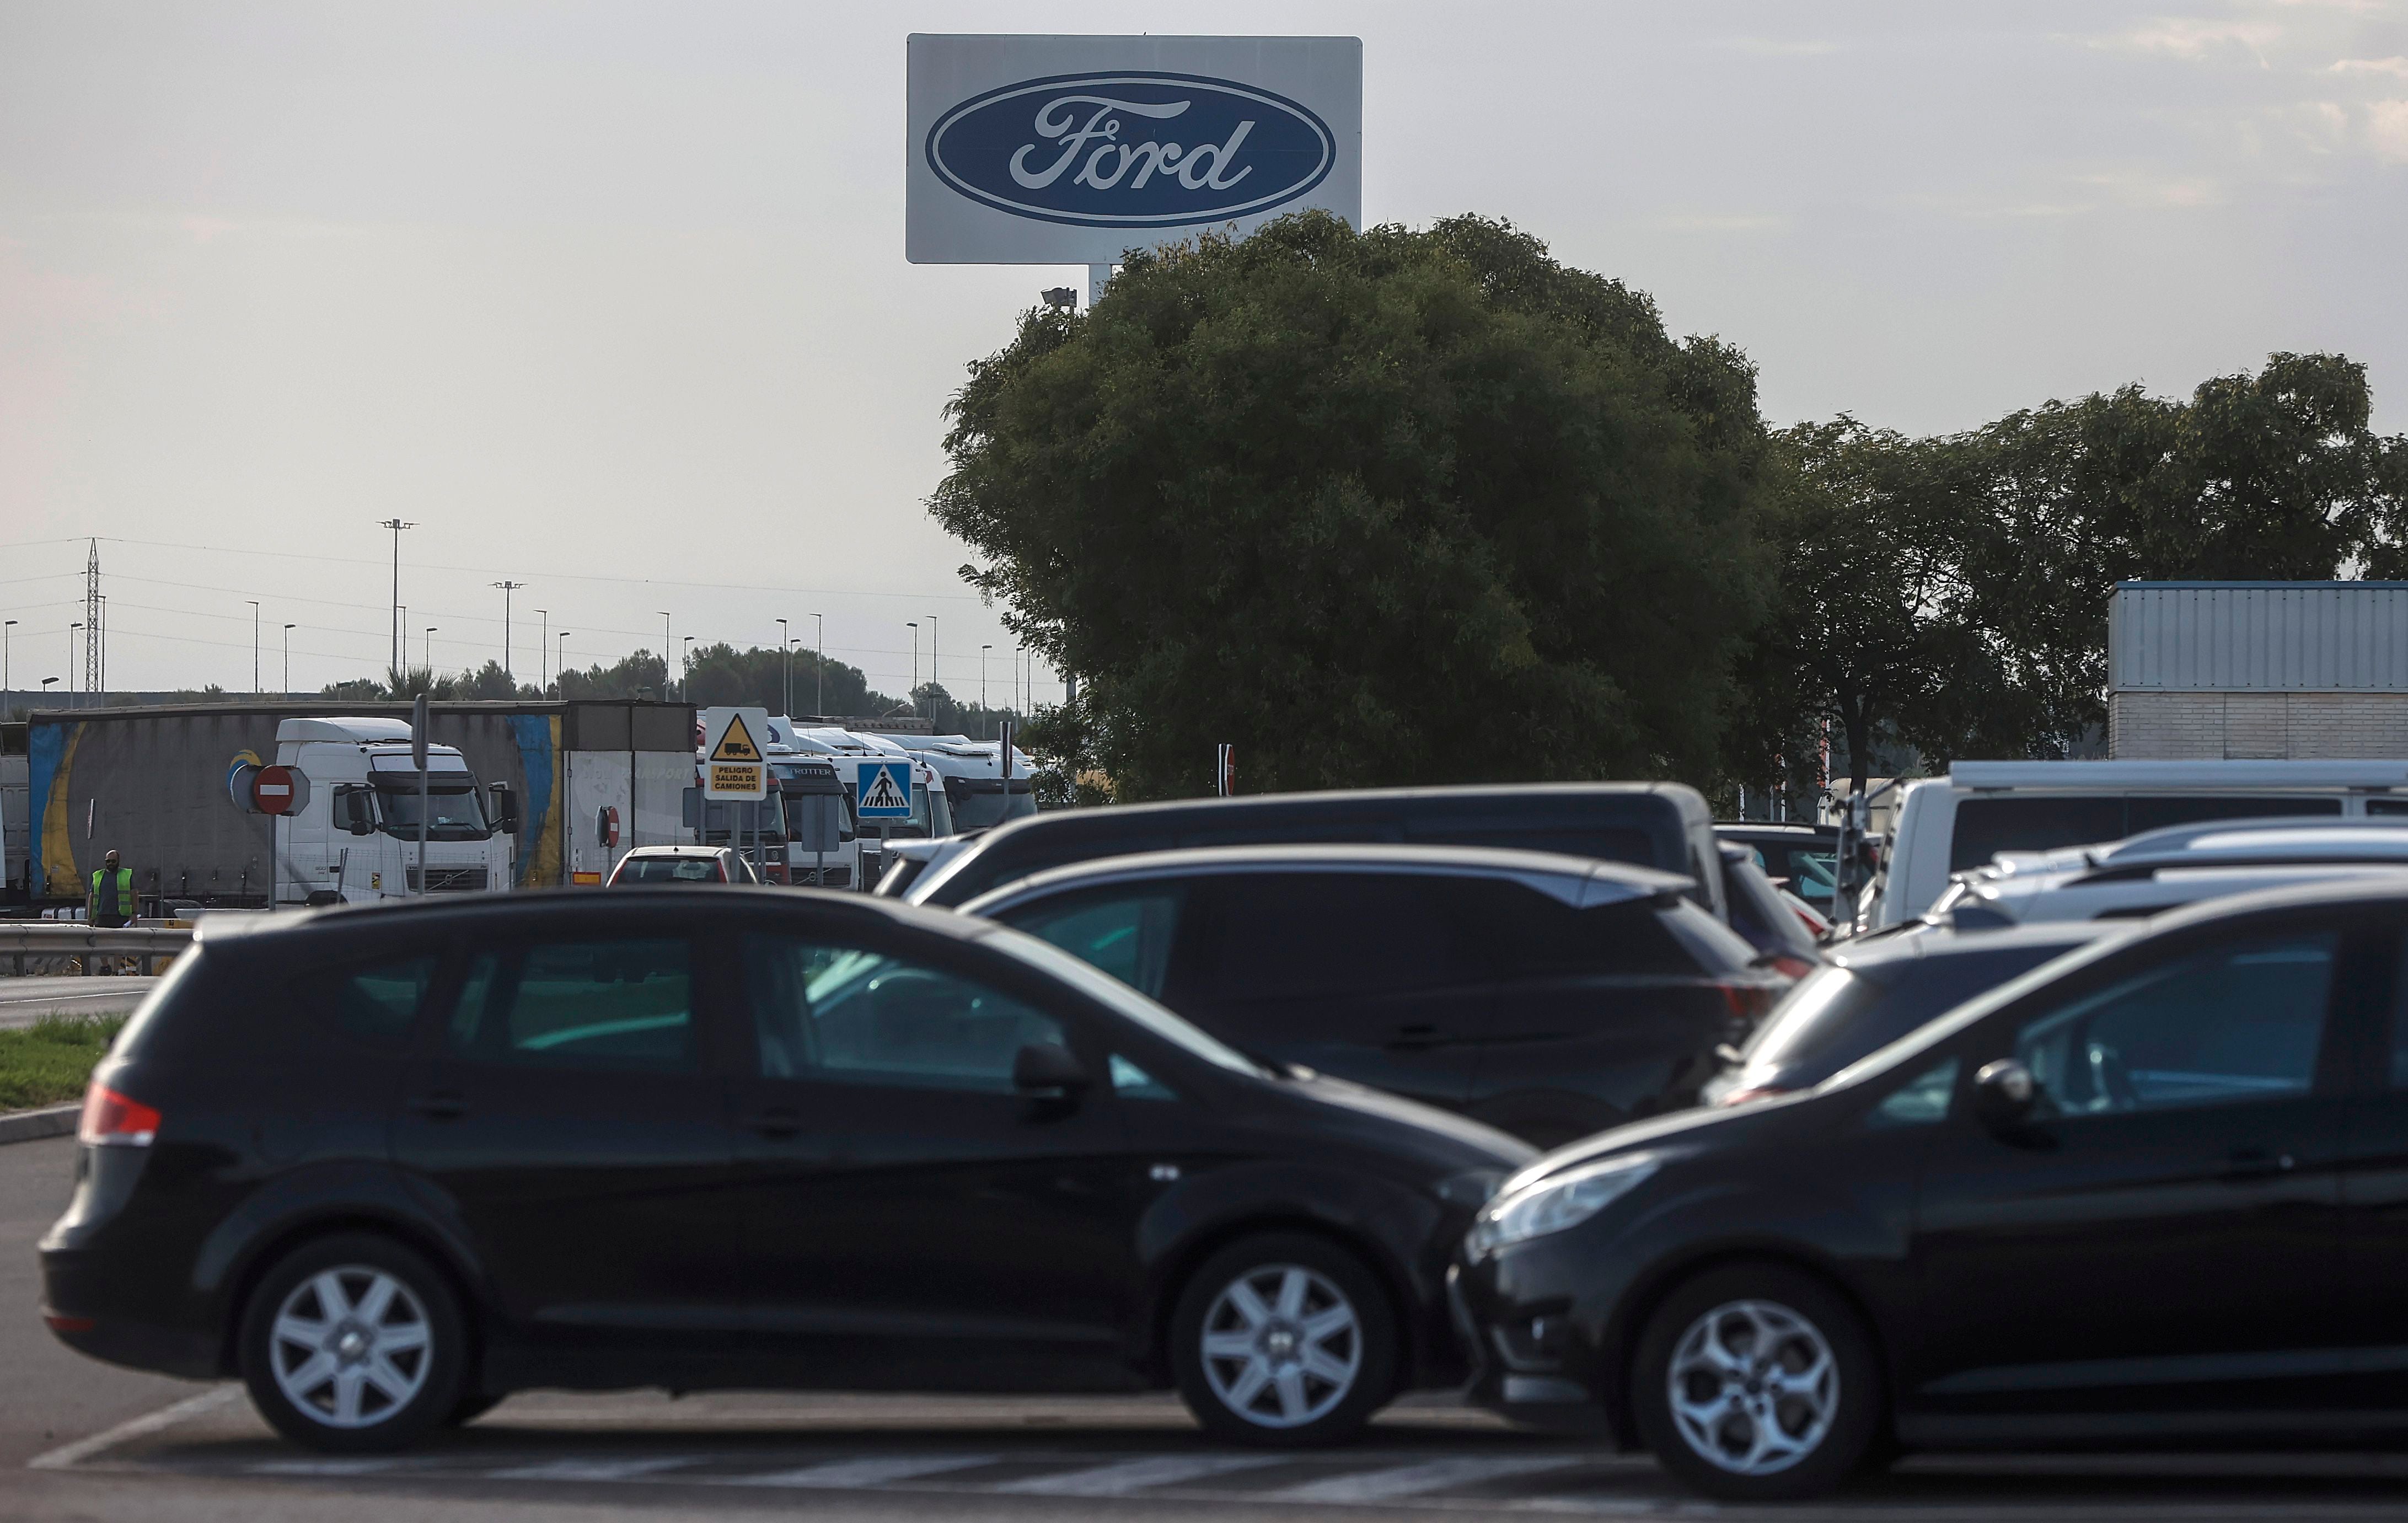 Ford confirma la producción de un nuevo vehículo en su planta de Almussafes